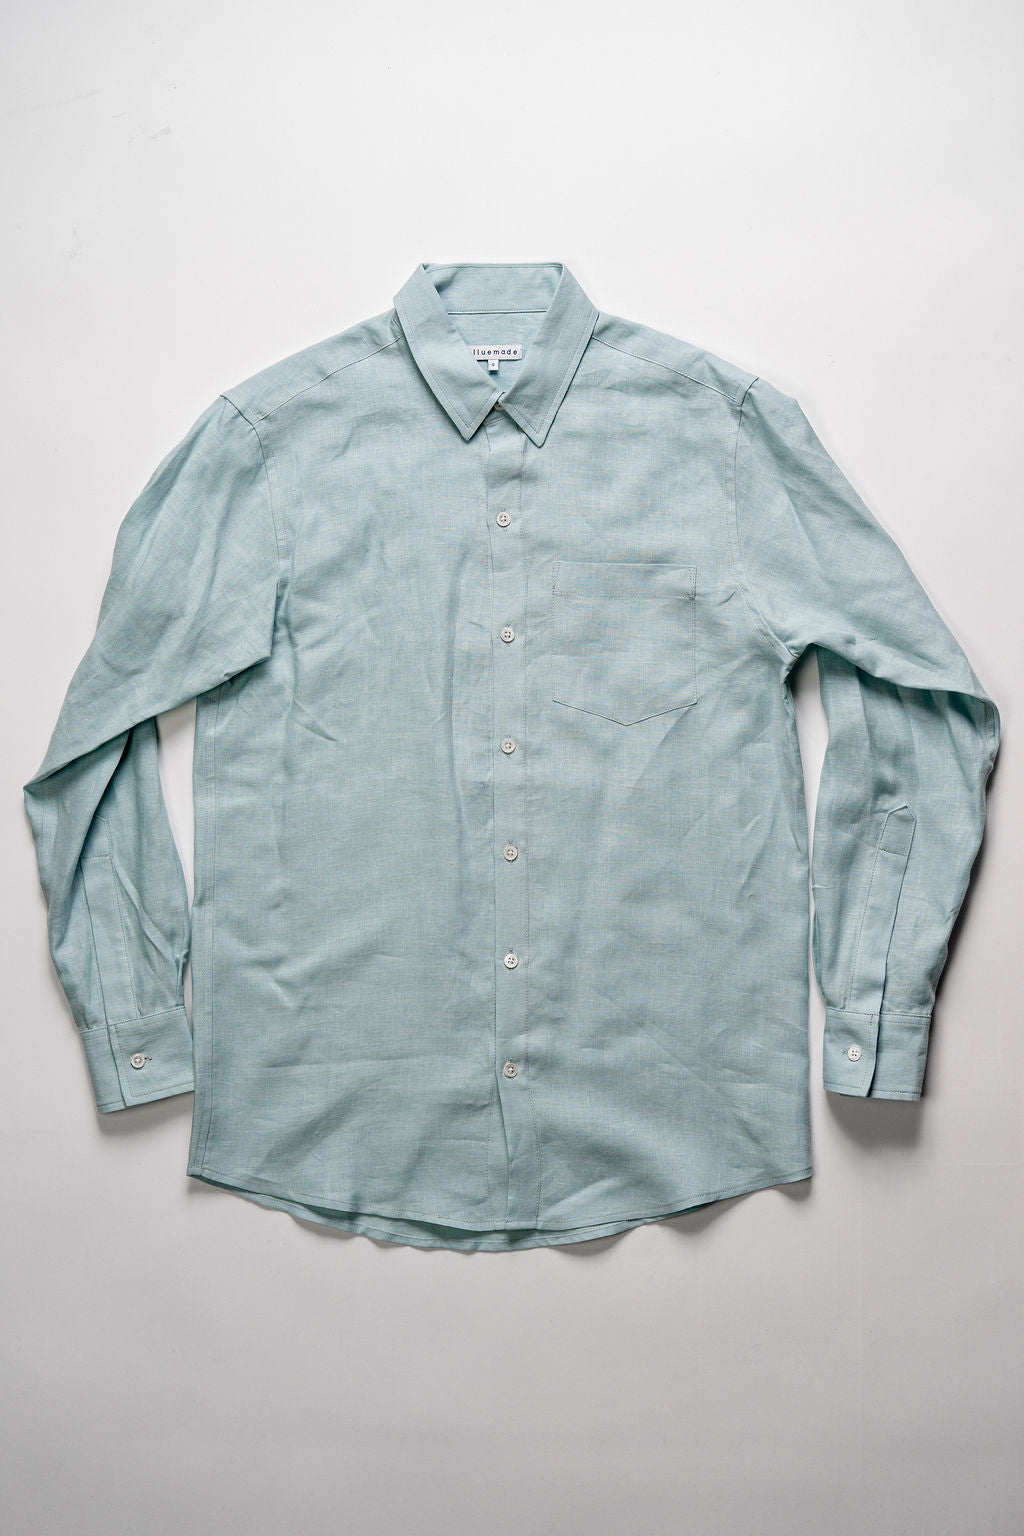 Blluemade Classic L/S Shirt - Light Blue Belgian Linen